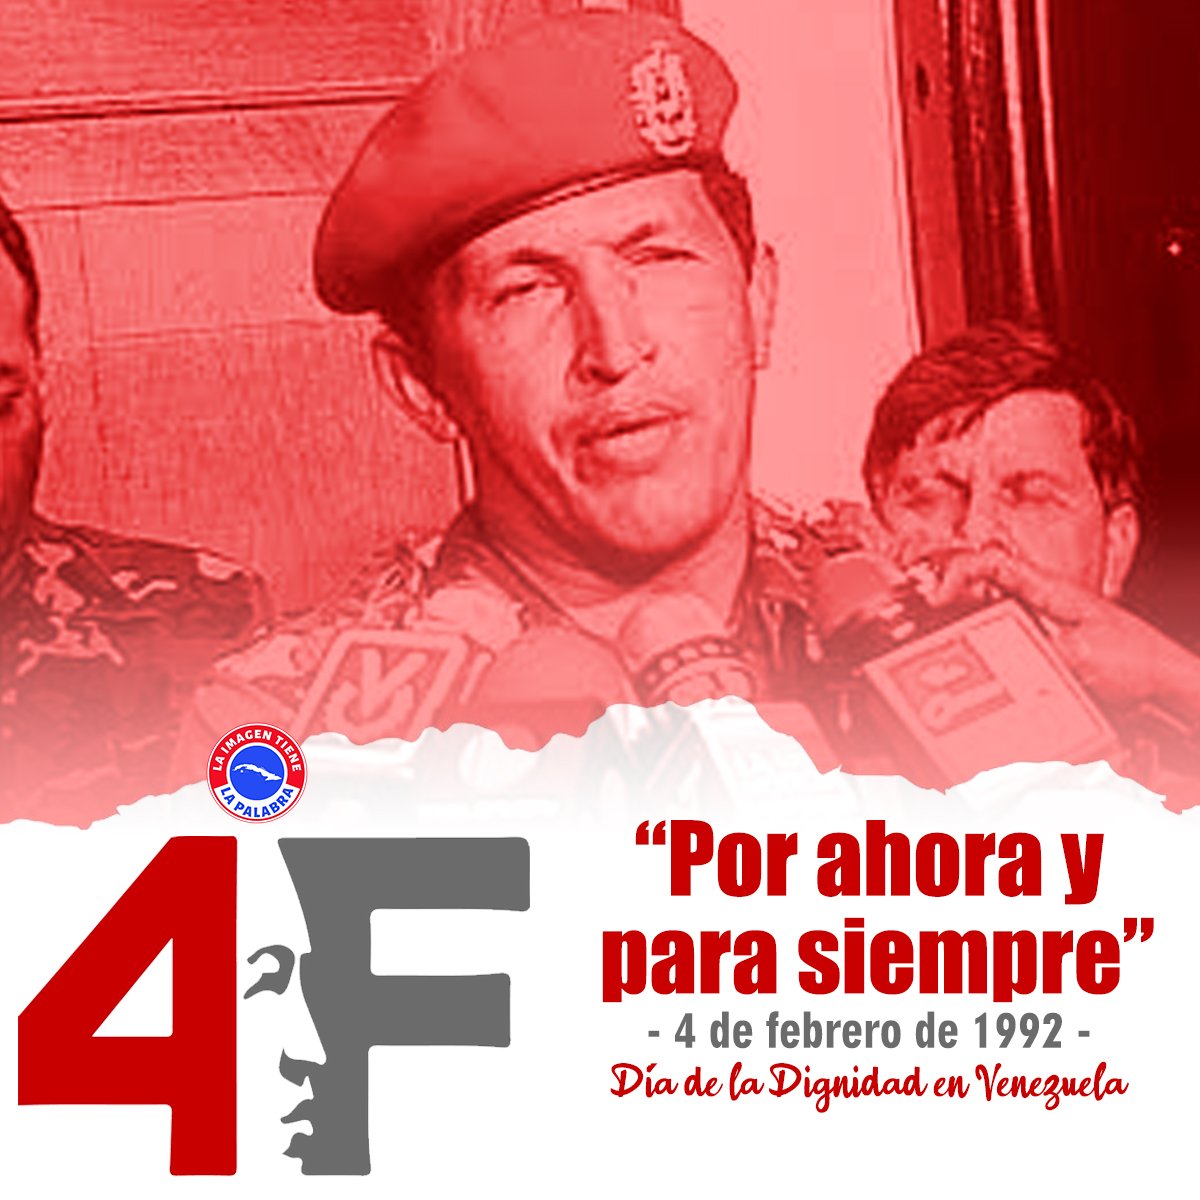 El 4 de febrero de 1992 en #Venezuela, fué el día en que un grupo de jóvenes se levantaron contra el neoliberalismo, fué aquel día del 'por ahora' y para siempre!!. 
Día de la Dignidad Nacional
¡Viva Chávez!
¡Vivan los héroes del 4F! 
#ChávezVive 🇻🇪
#DeZurdaTeam